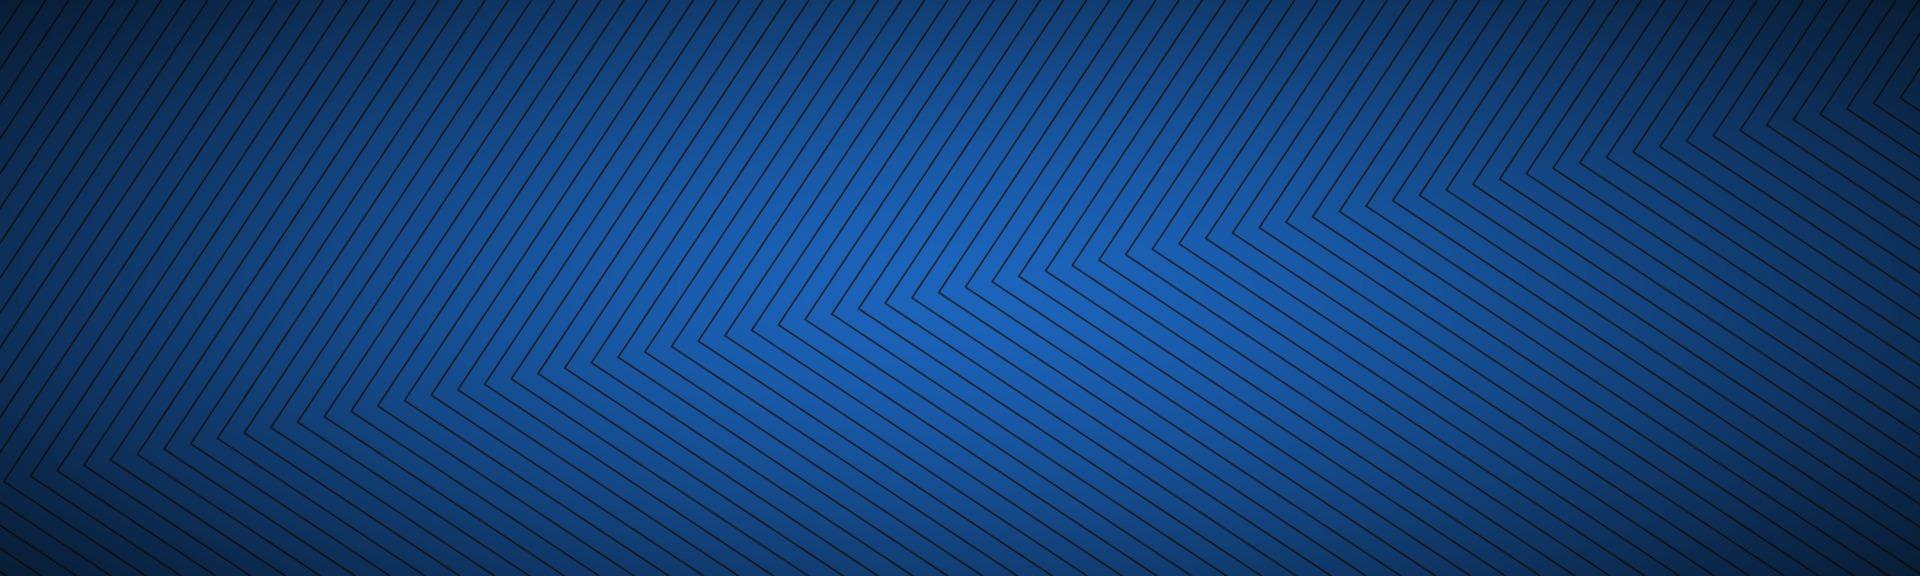 moderner blauer abstrakter Header. das Aussehen von Edelstahl Banner. quadratische Linien auf blauem Grund vektor